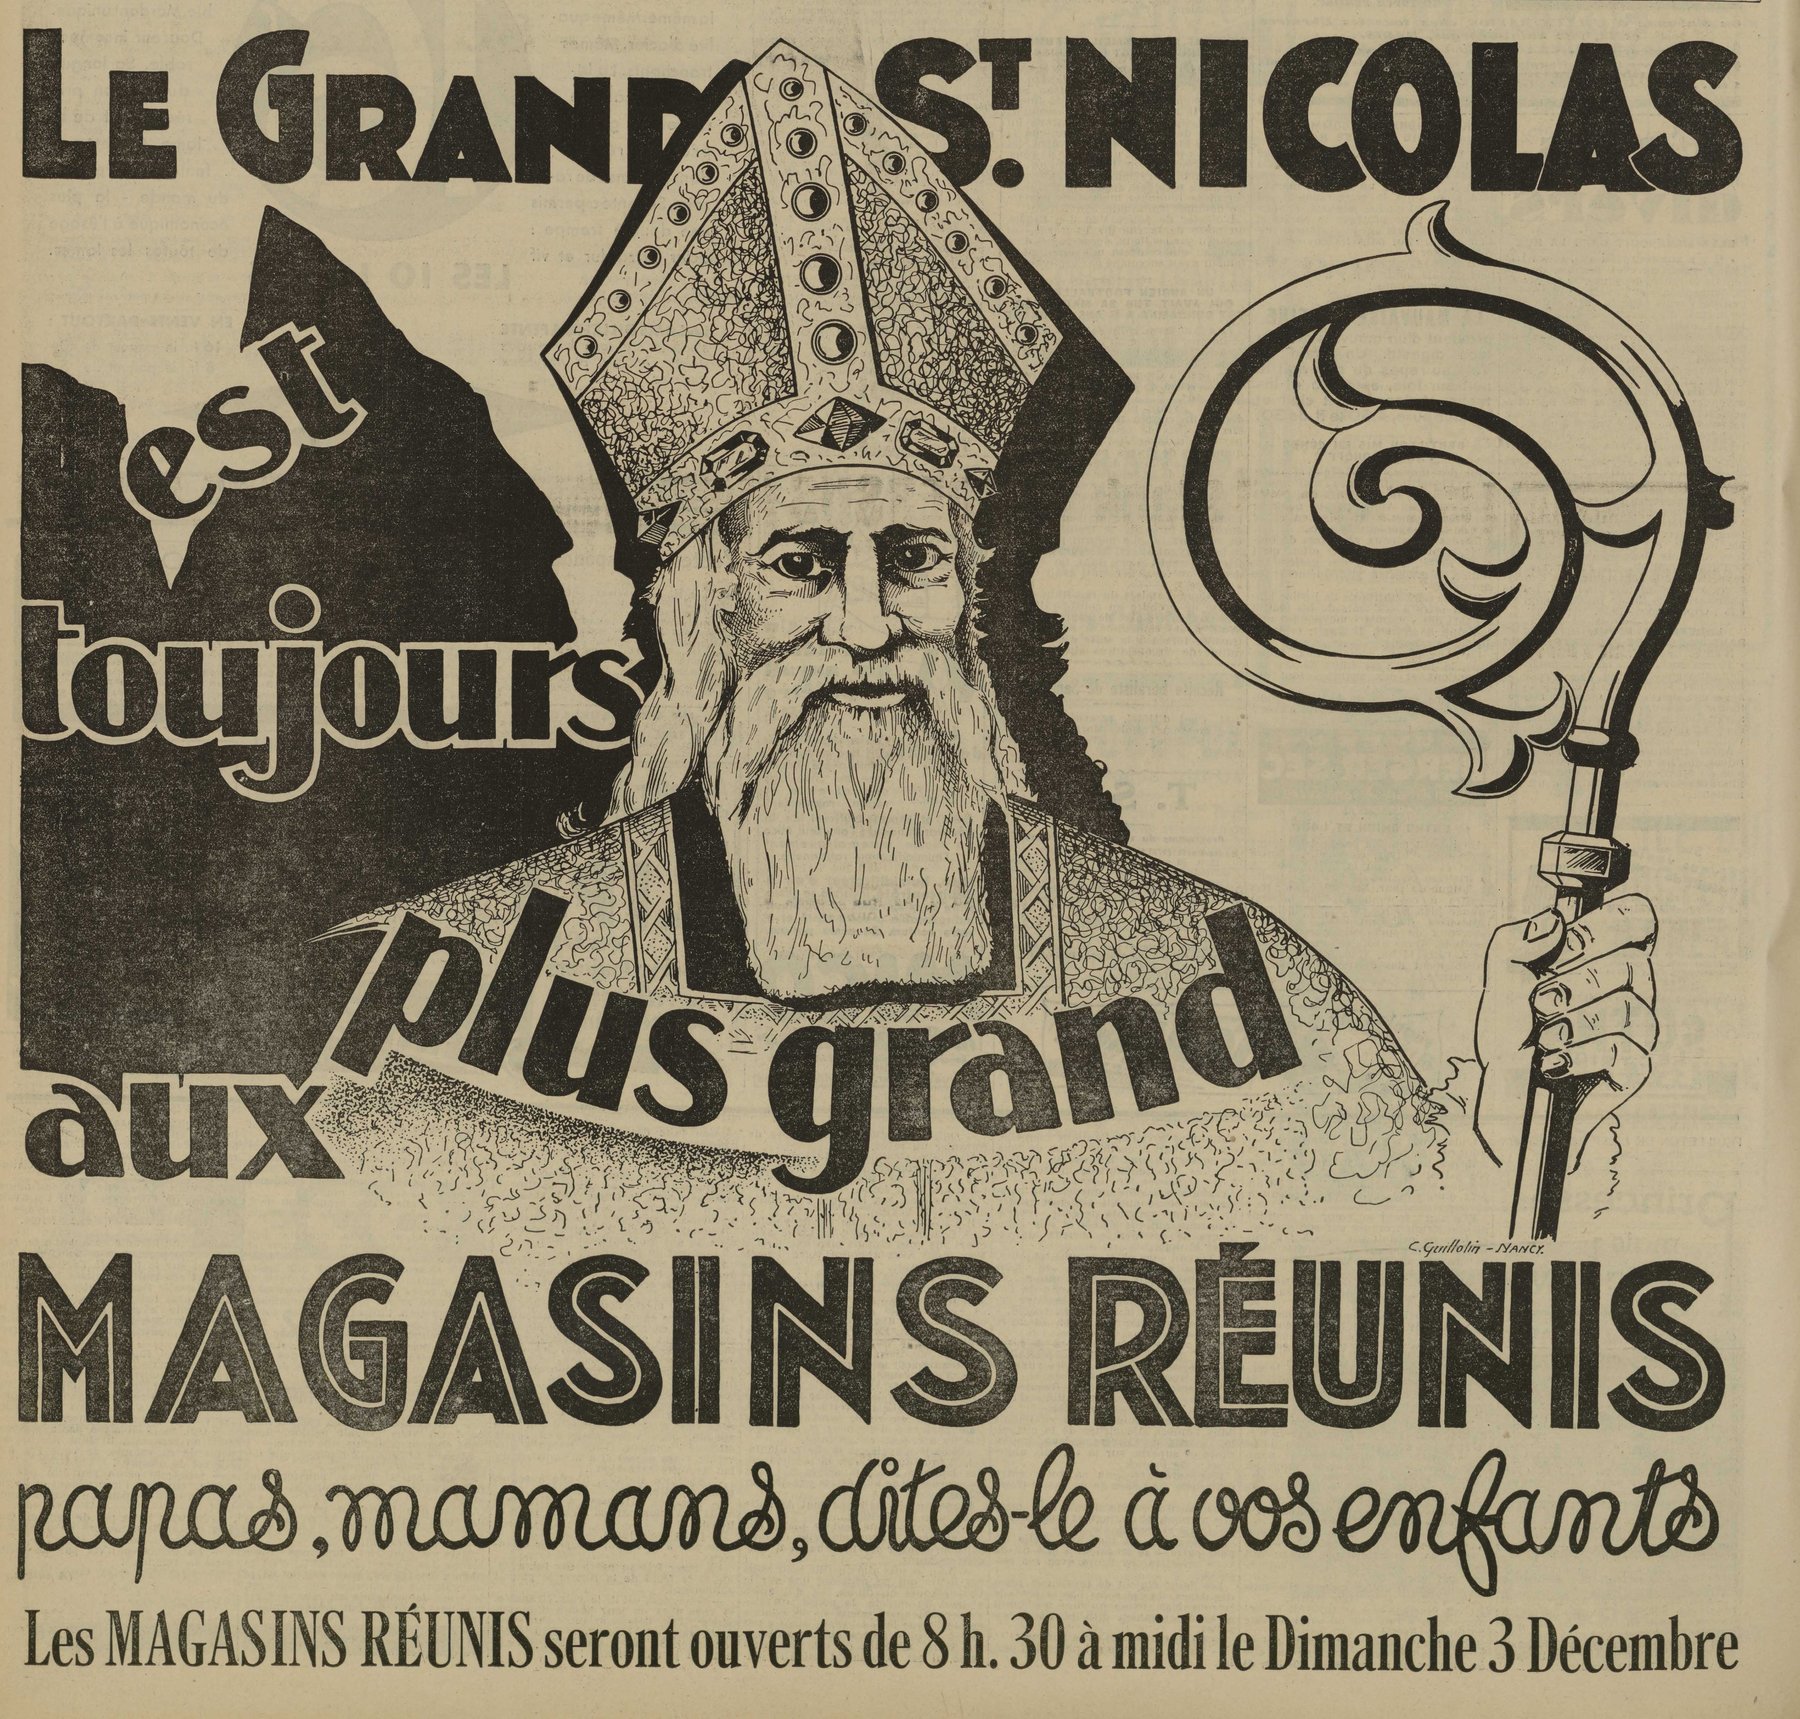 Contenu du Le grand Saint Nicolas est toujours plus grand aux Magasins Réunis